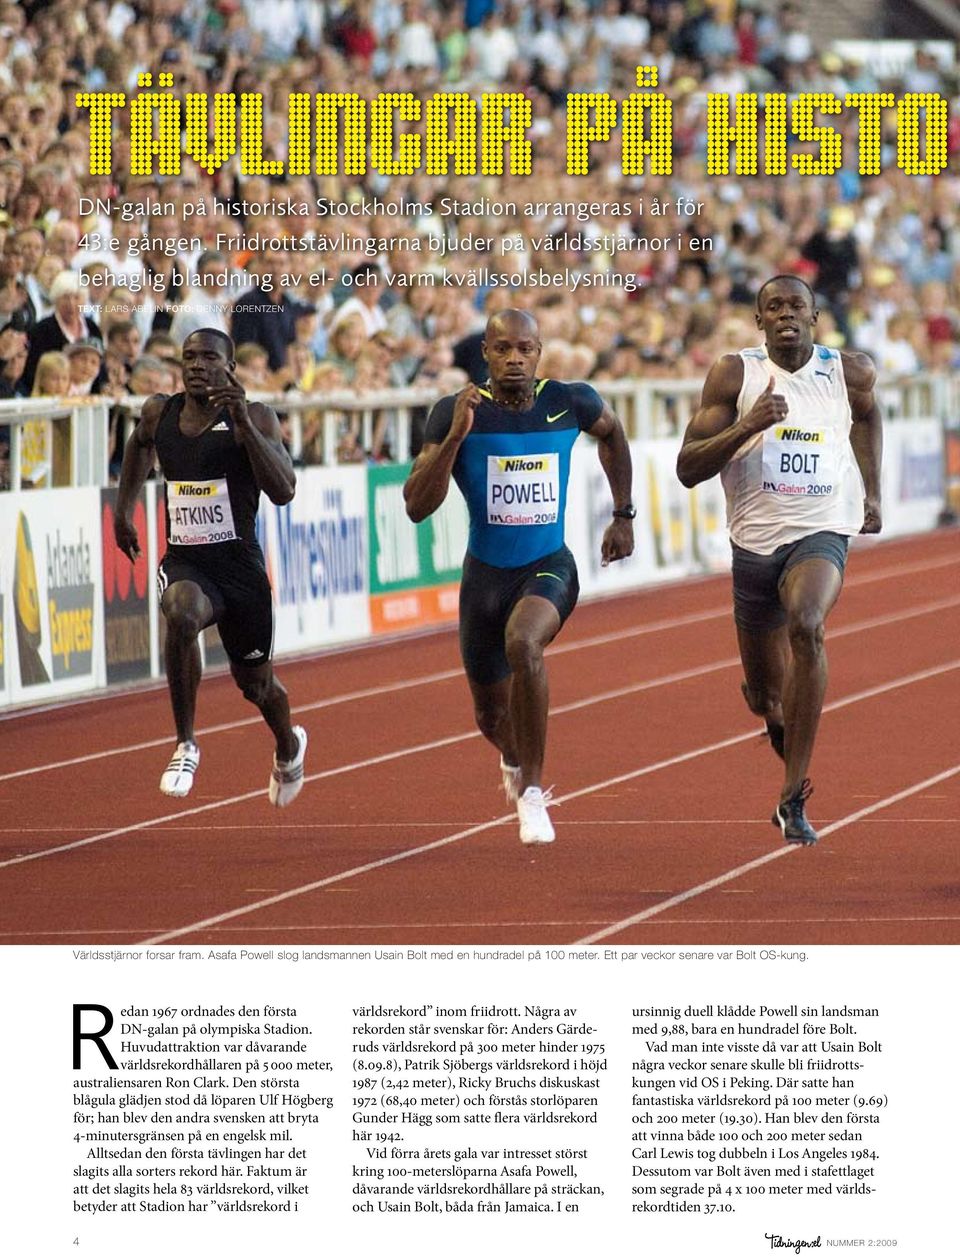 Asafa Powell slog landsmannen Usain Bolt med en hundradel på 100 meter. Ett par veckor senare var Bolt OS-kung. Redan 1967 ordnades den första DN-galan på olympiska Stadion.